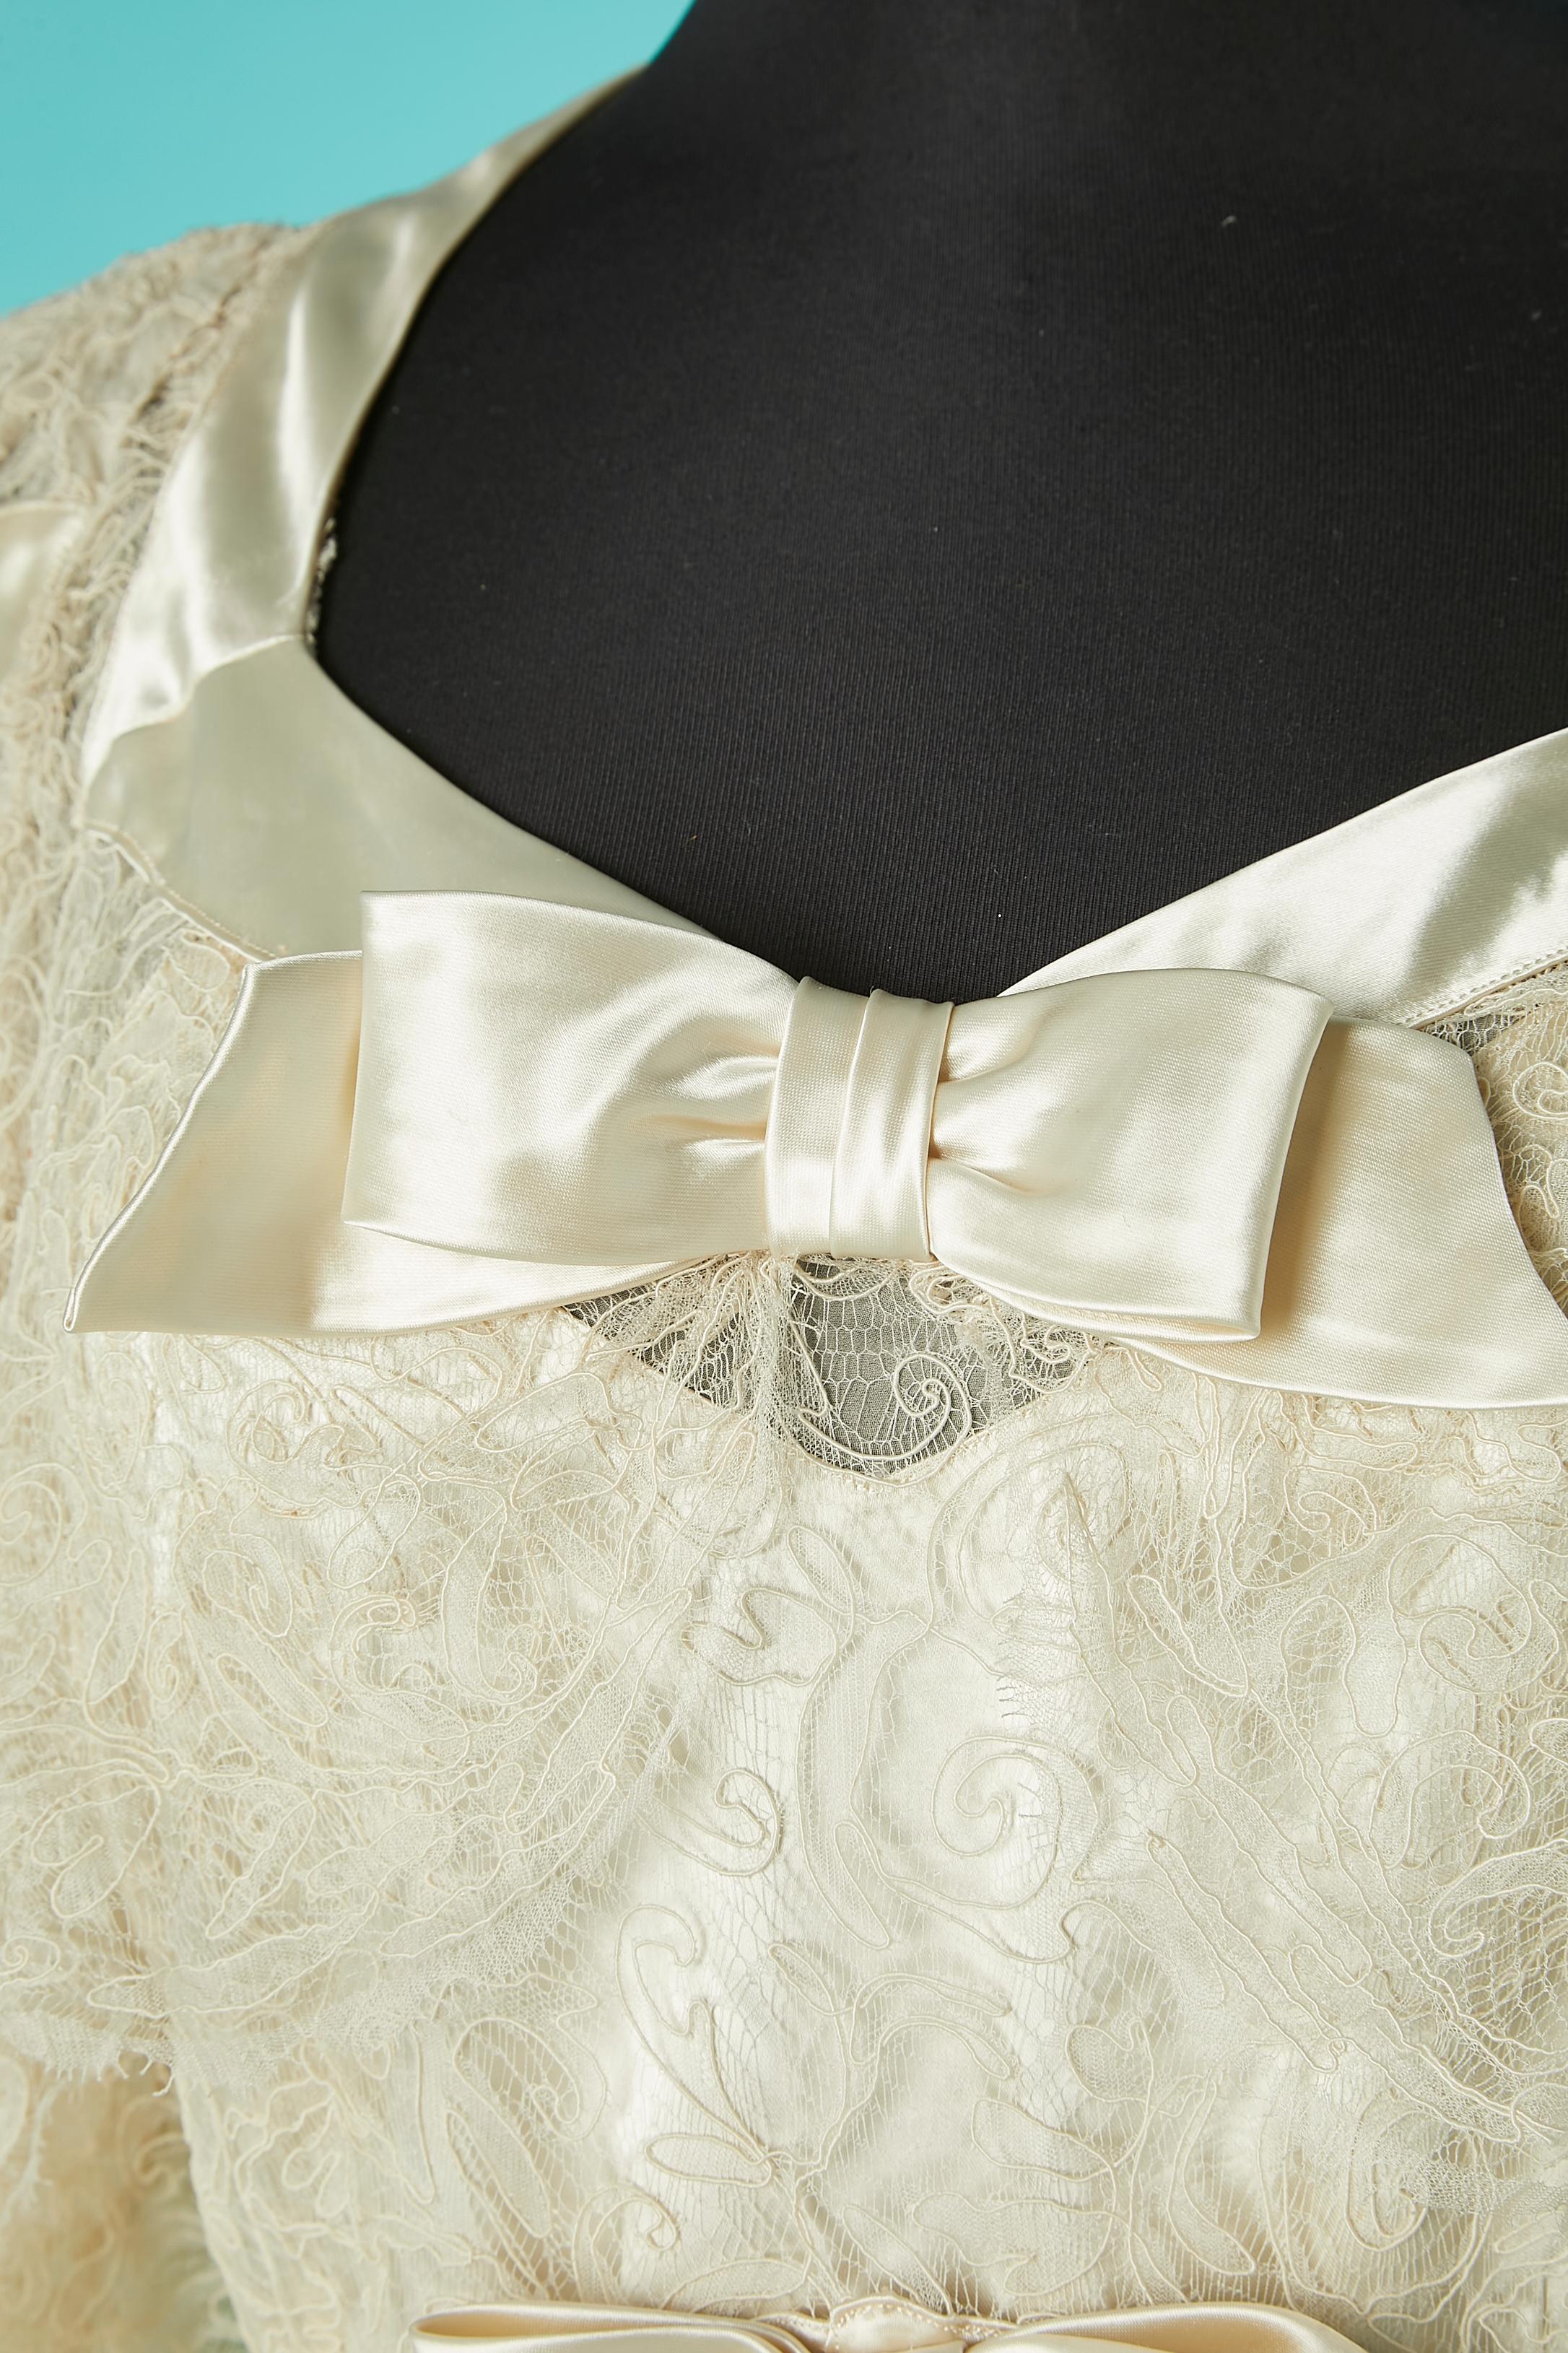  Weißes Hochzeitskleid aus Spitze und Satinschleife mit Druckknopfverschluss auf der linken Seite. Satinfutter mit Reißverschluss auch auf der linken Seite. 
Gesamtlänge vorne: 160 cm
Gesamtlänge im Rücken : 175 cm 
SIZE 40 (Fr) M/L 